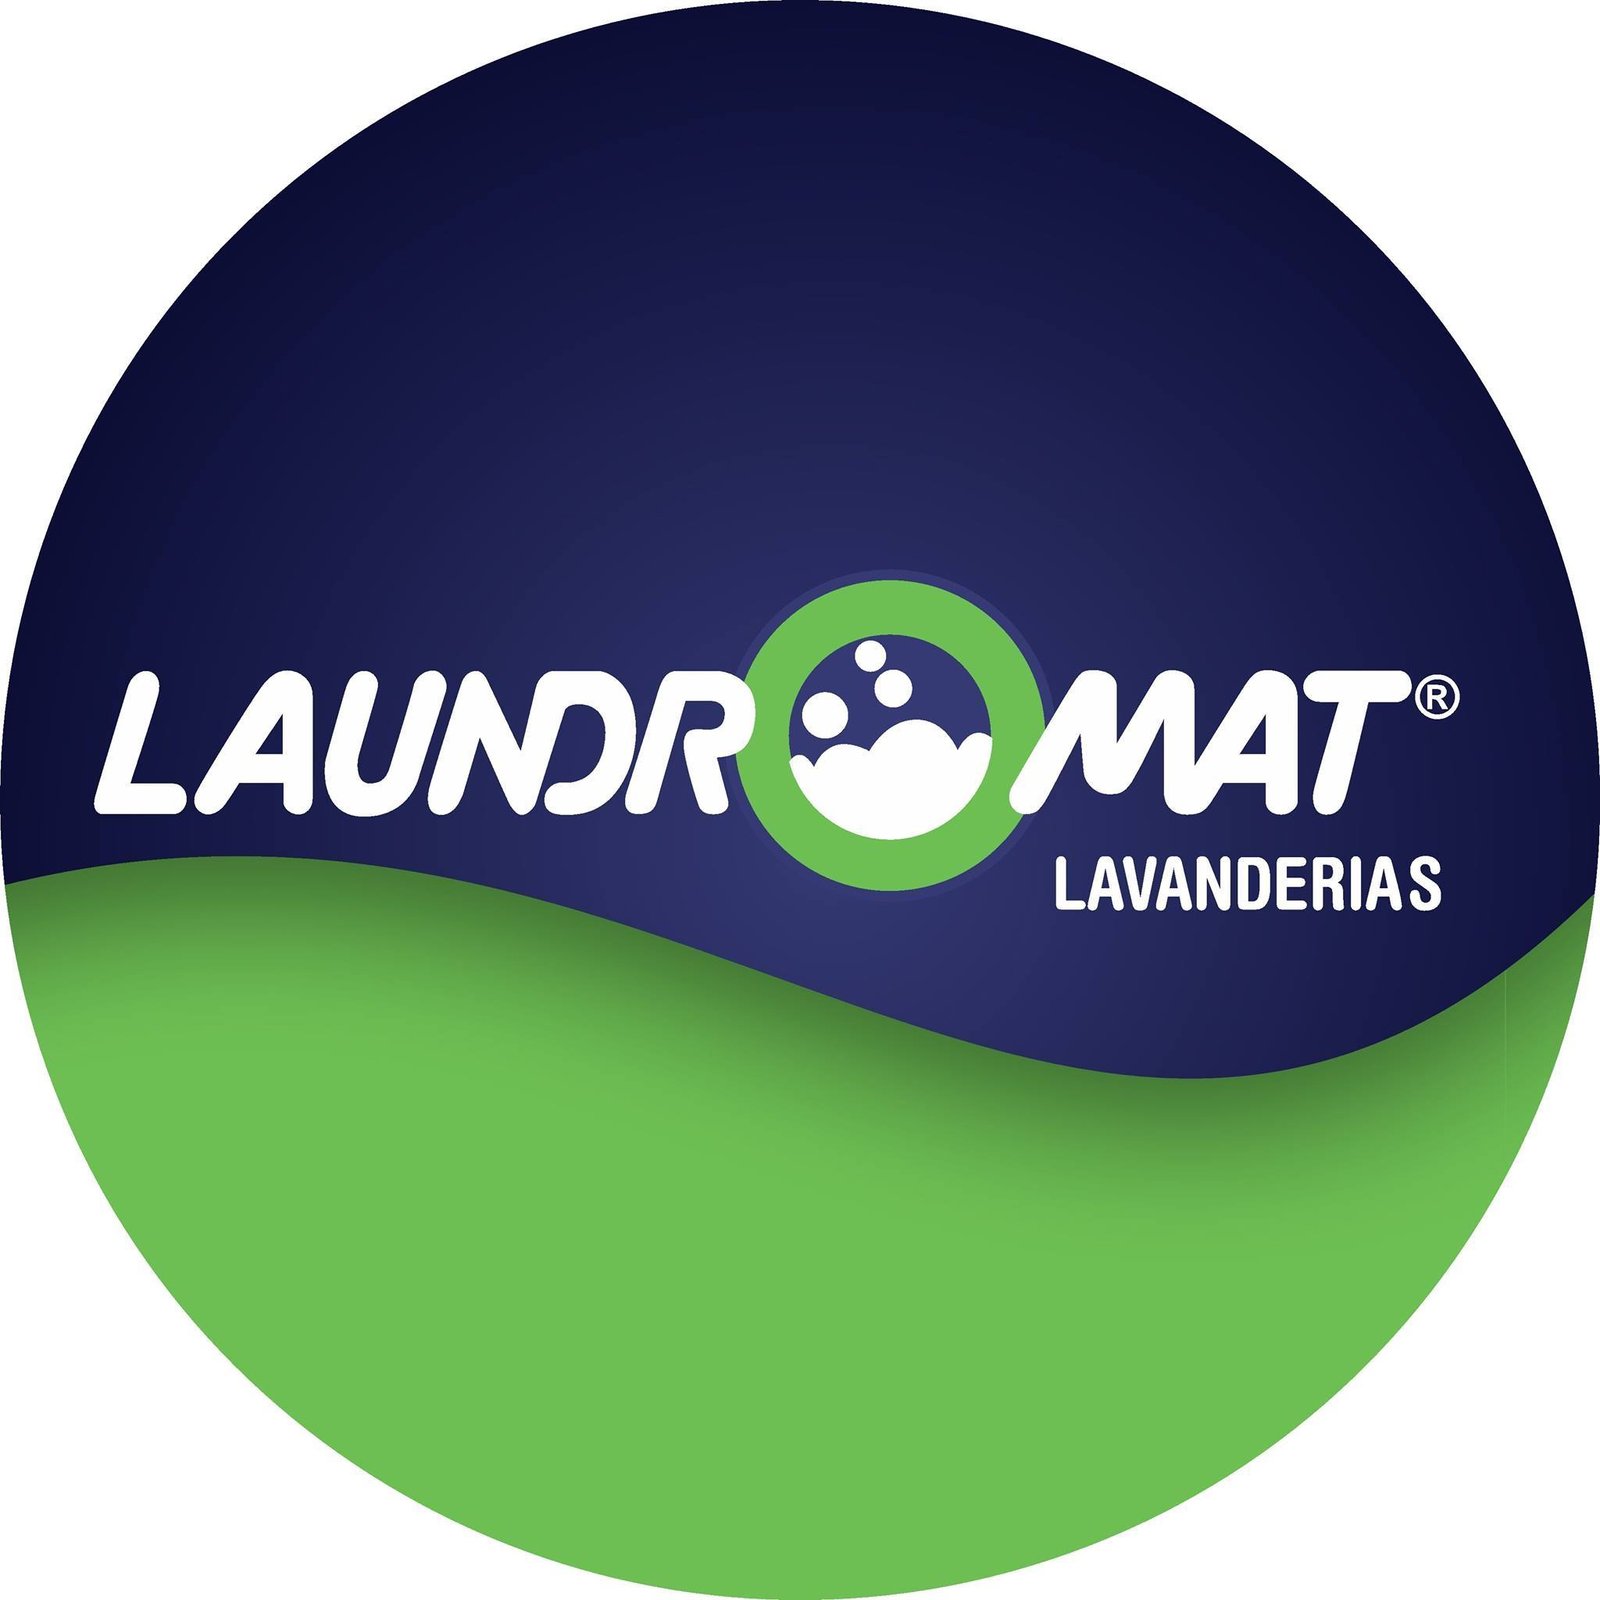 Laundromat - O jeito mais prático e econômico de lavar roupa